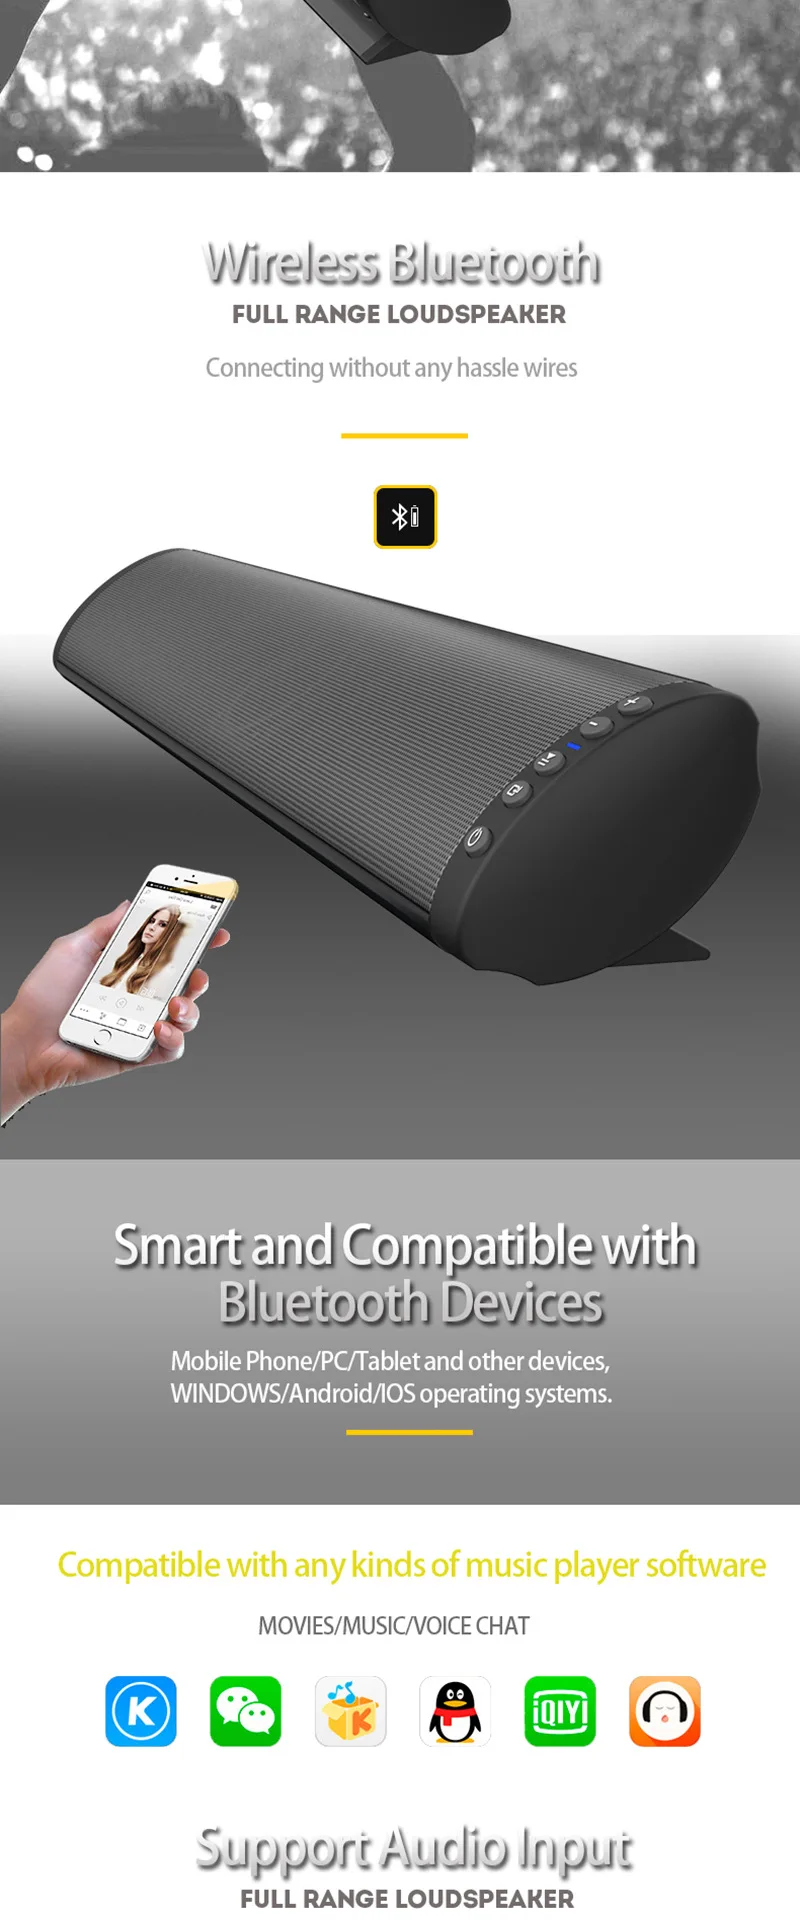 20 Вт Bluetooth динамик Саундбар стерео Портативная колонка беспроводной динамик с TF картой 3,5 мм разъем USB RCA для мобильного телефона